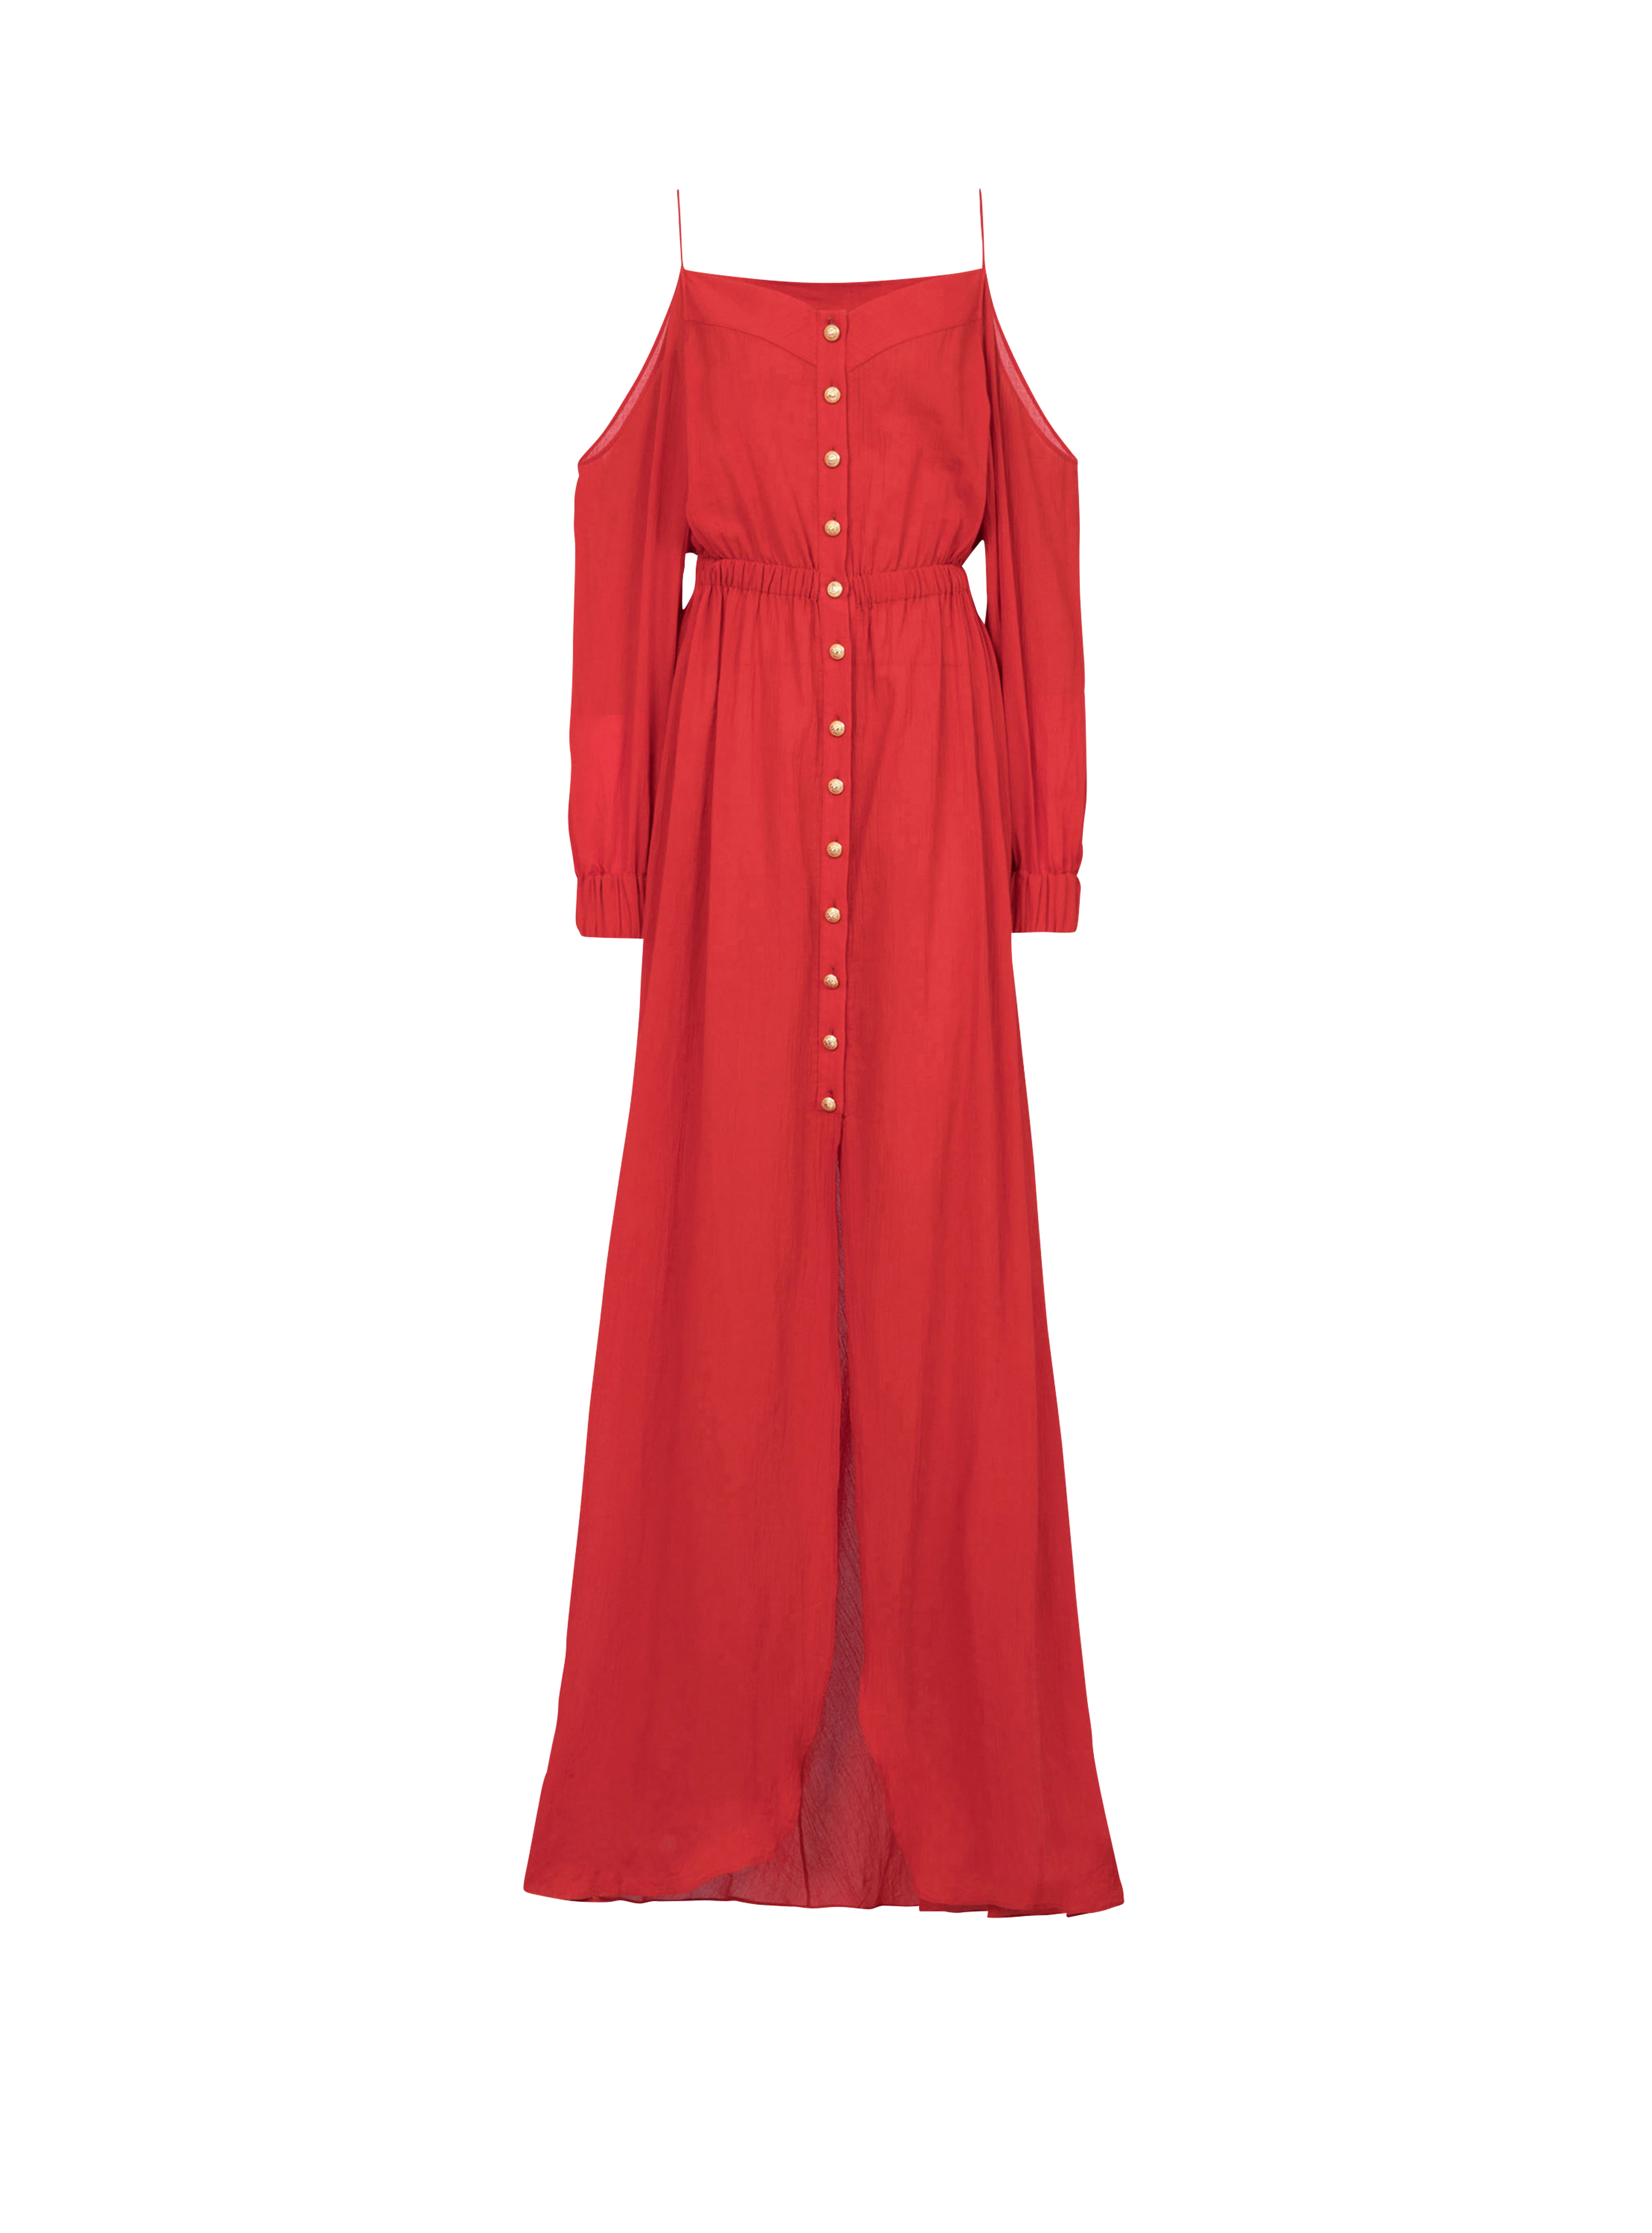 棉质连衣裙, red